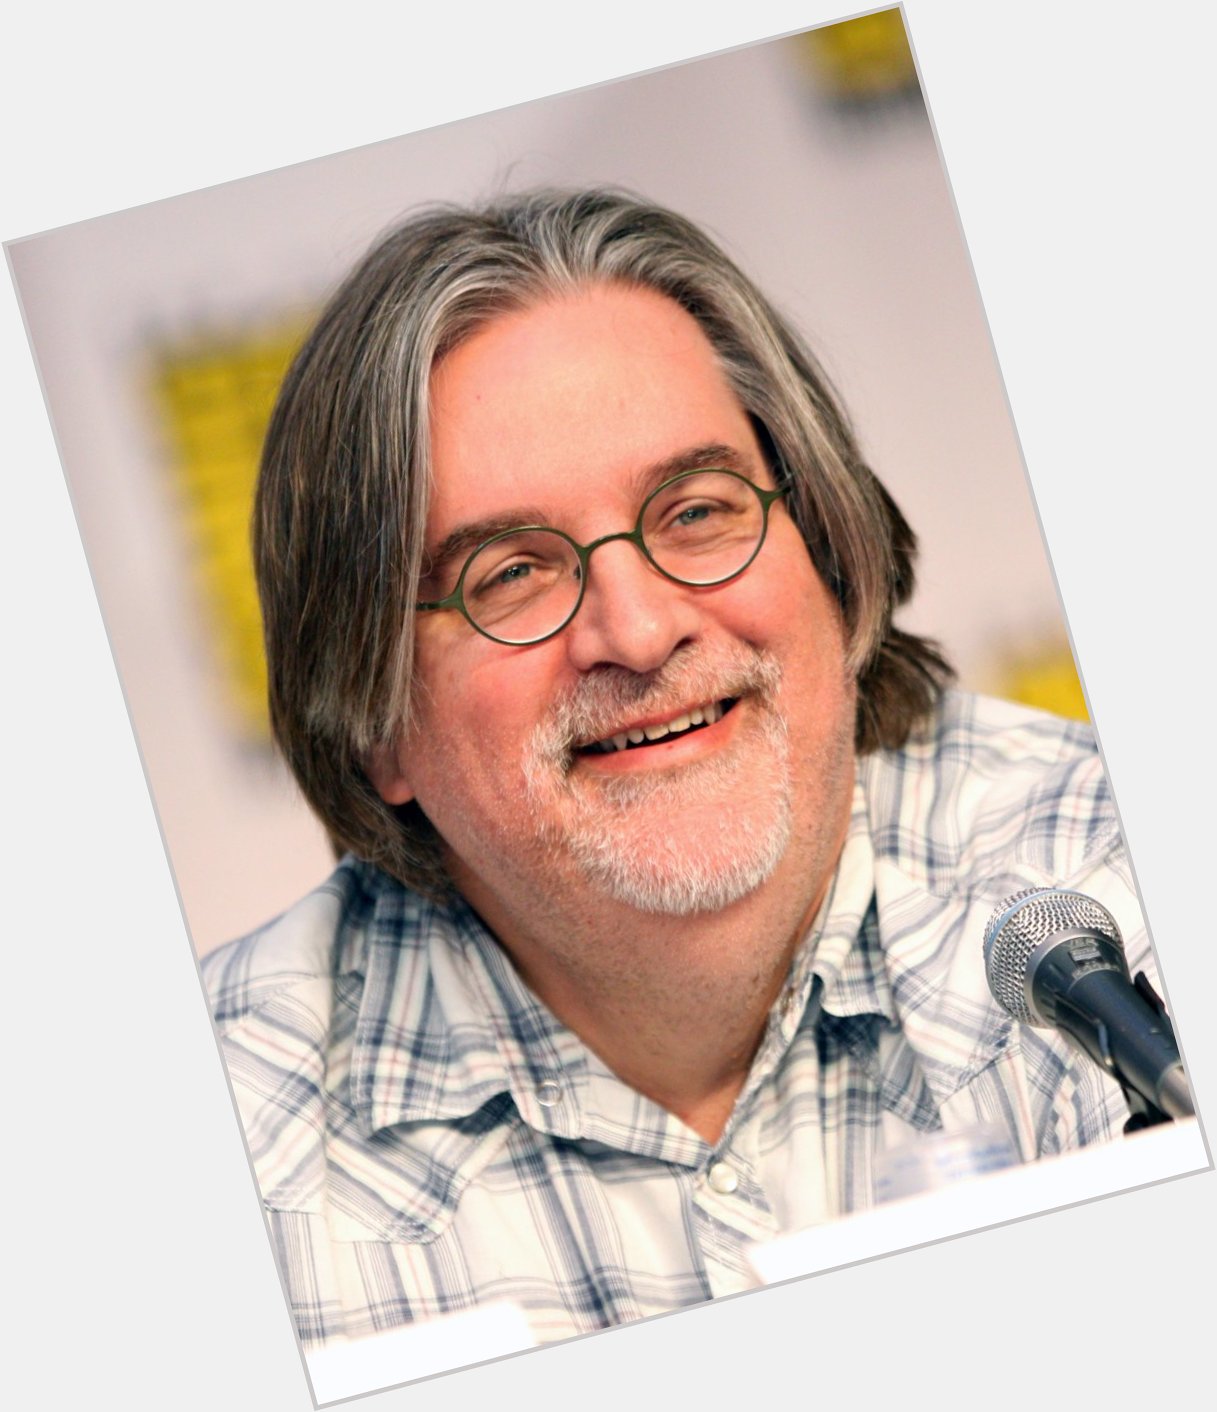 ¡Ay caramba! Happy 69th birthday to Matt Groening, creator of and Futurama! 